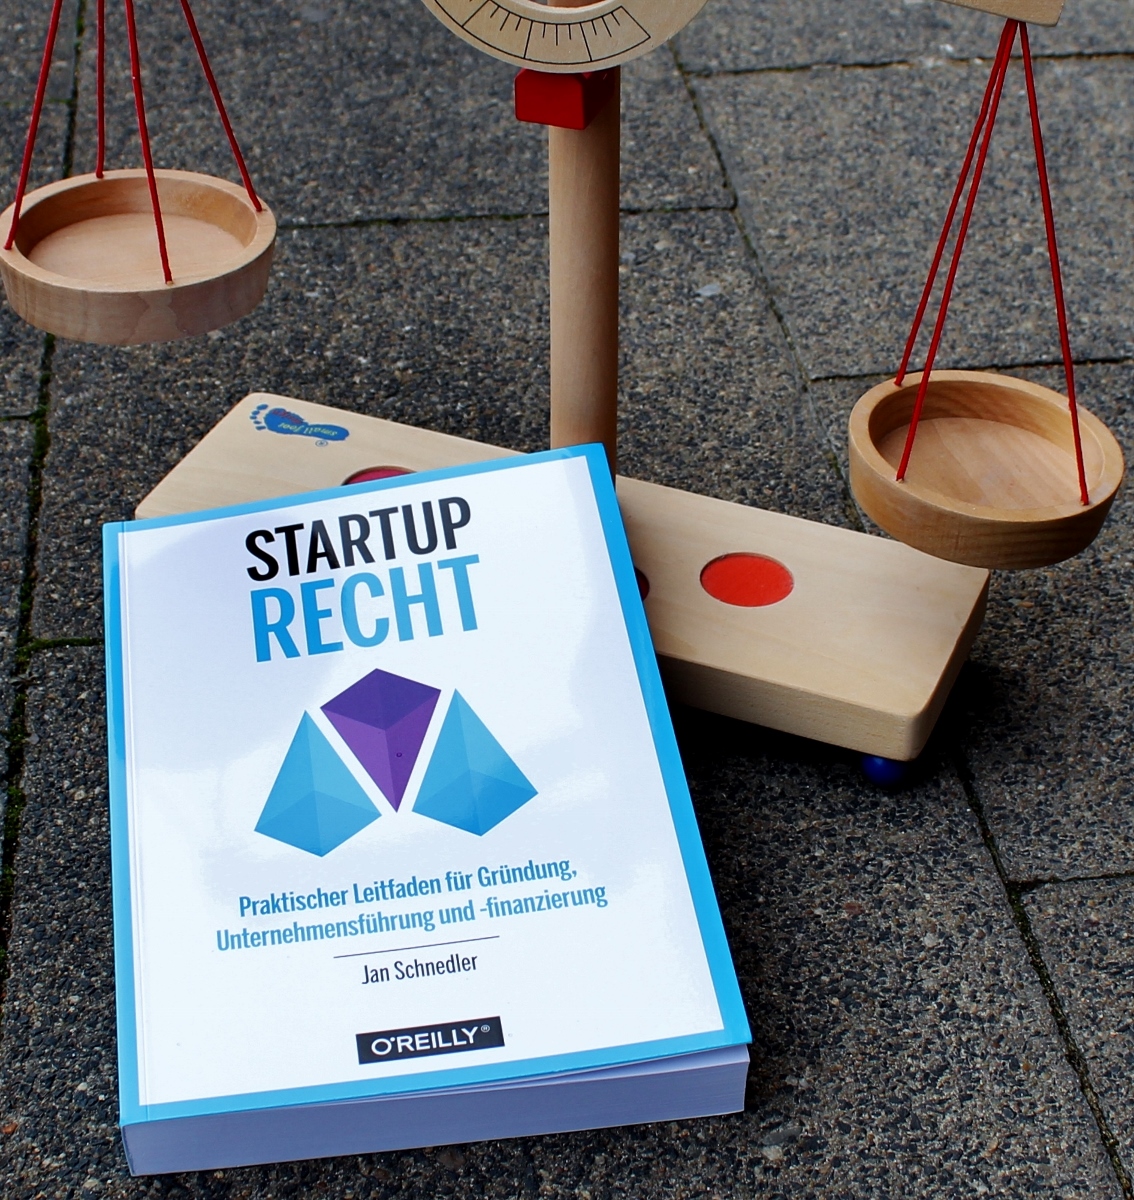 Startup-Recht: Fragen vor der Gründung klären (Interview)